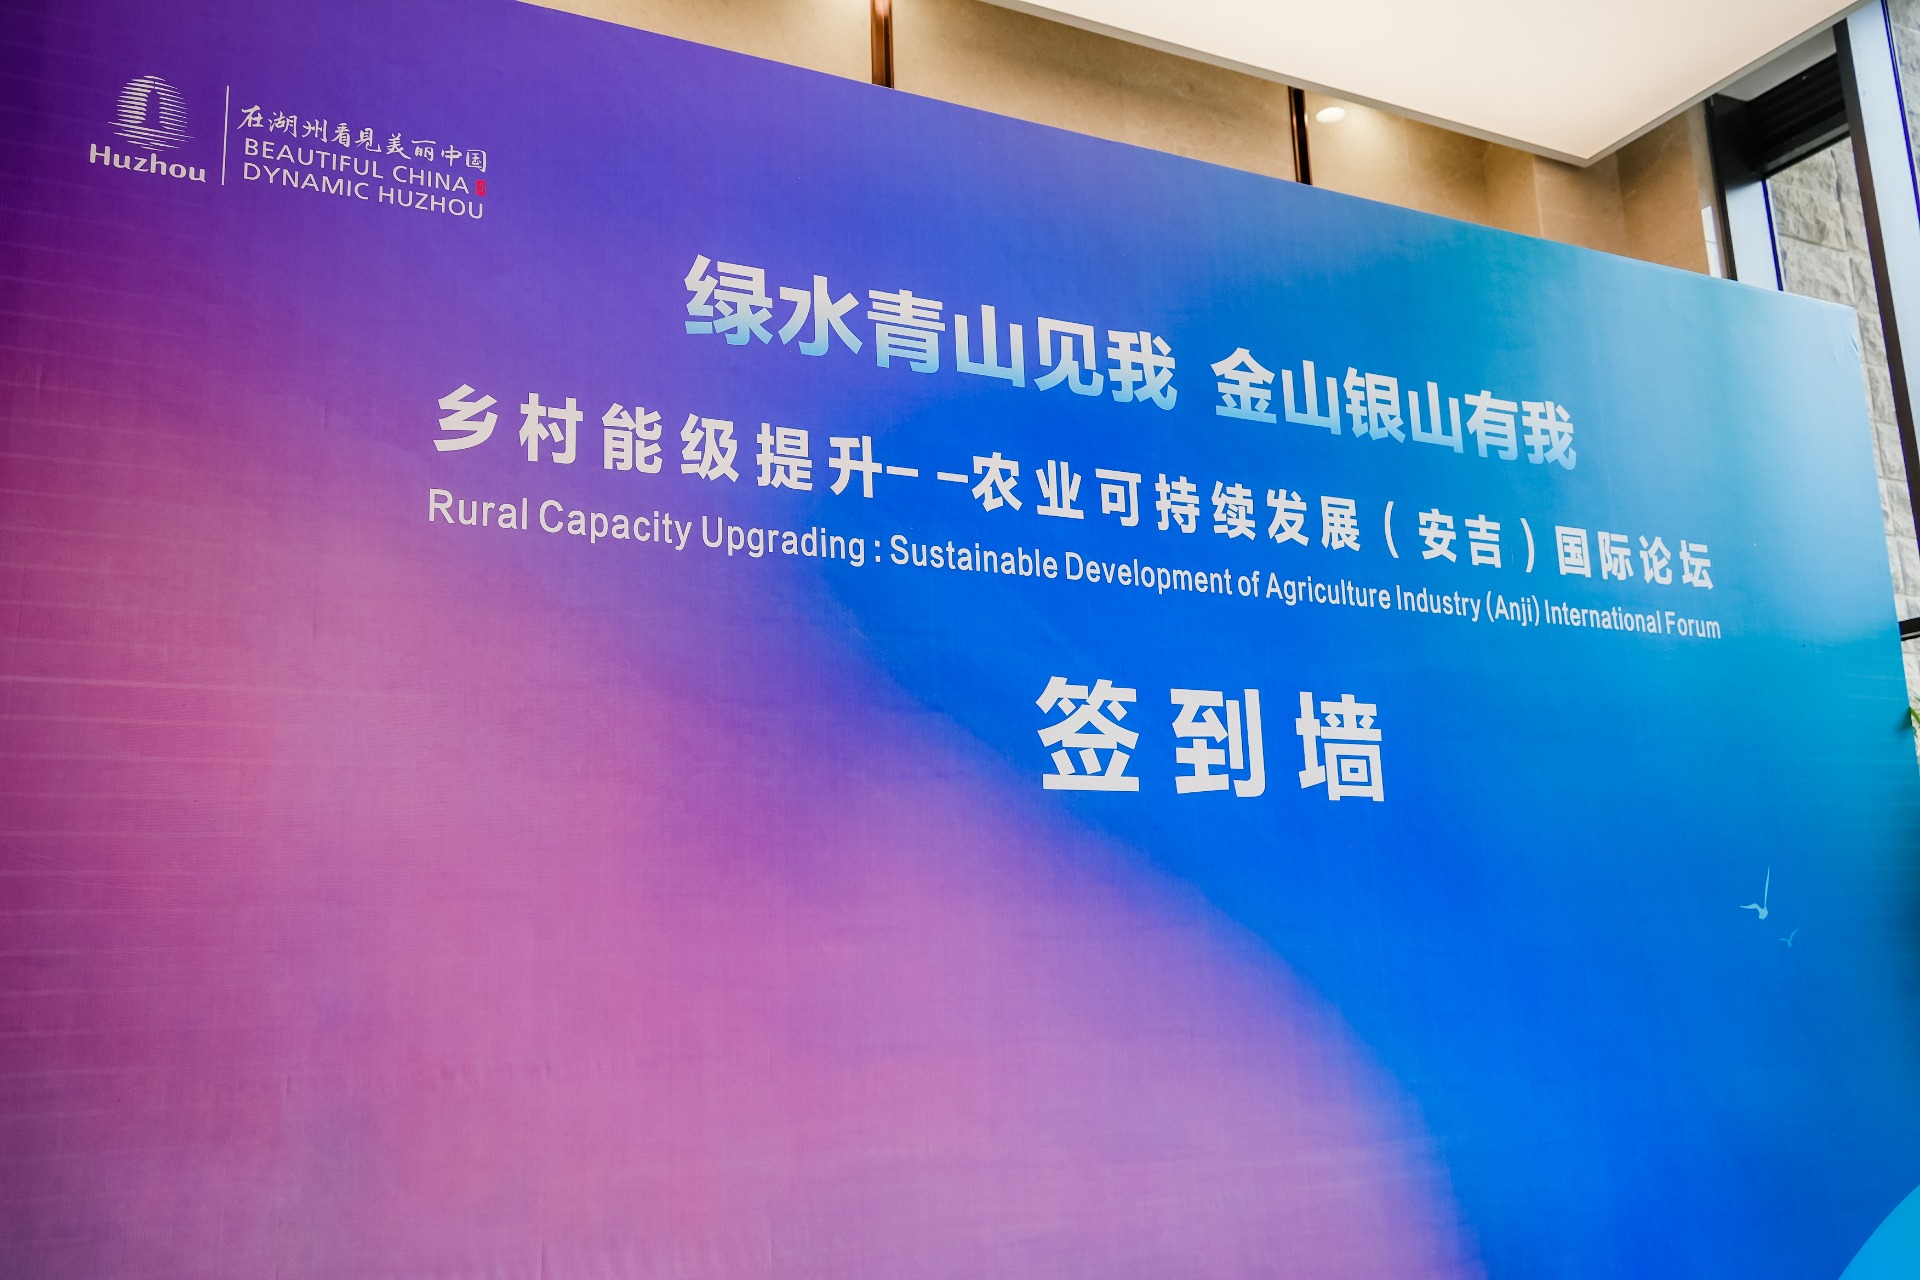 乡村能级提升-农业可持续发展（安吉）国际论坛在浙江安吉举办